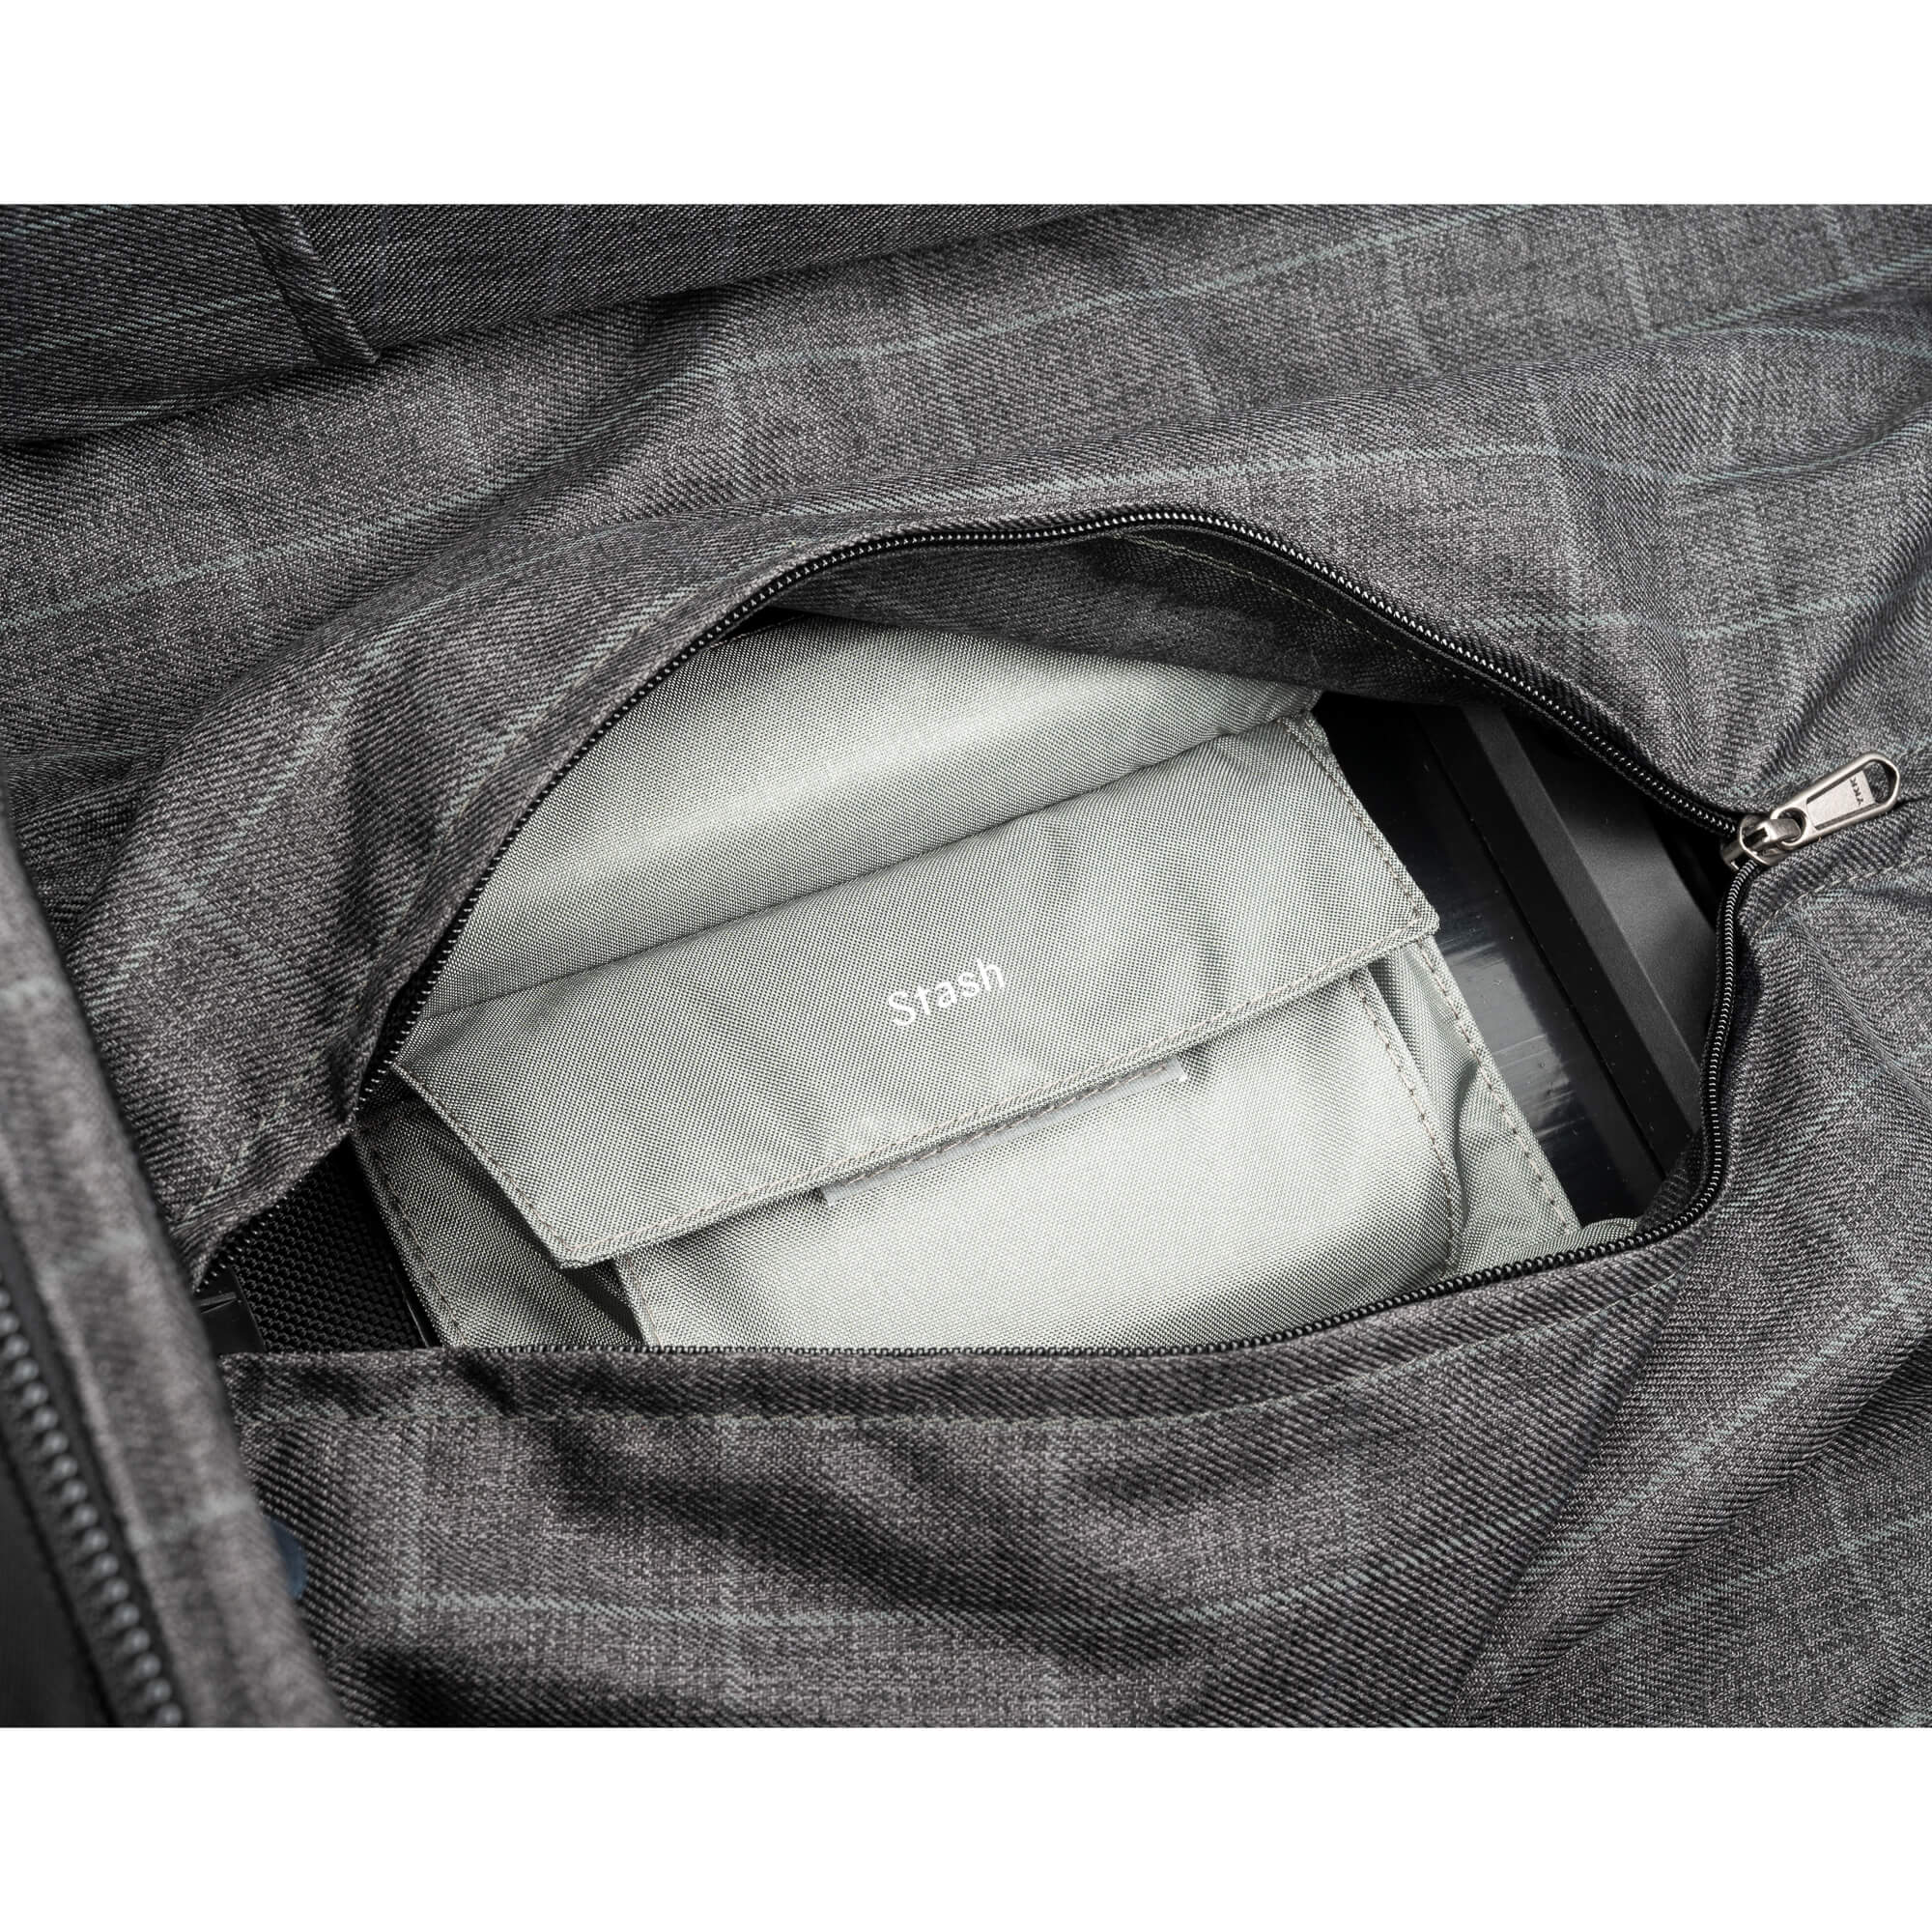 Venturing Observer Travel Roller + Clothing Cubes Bundle